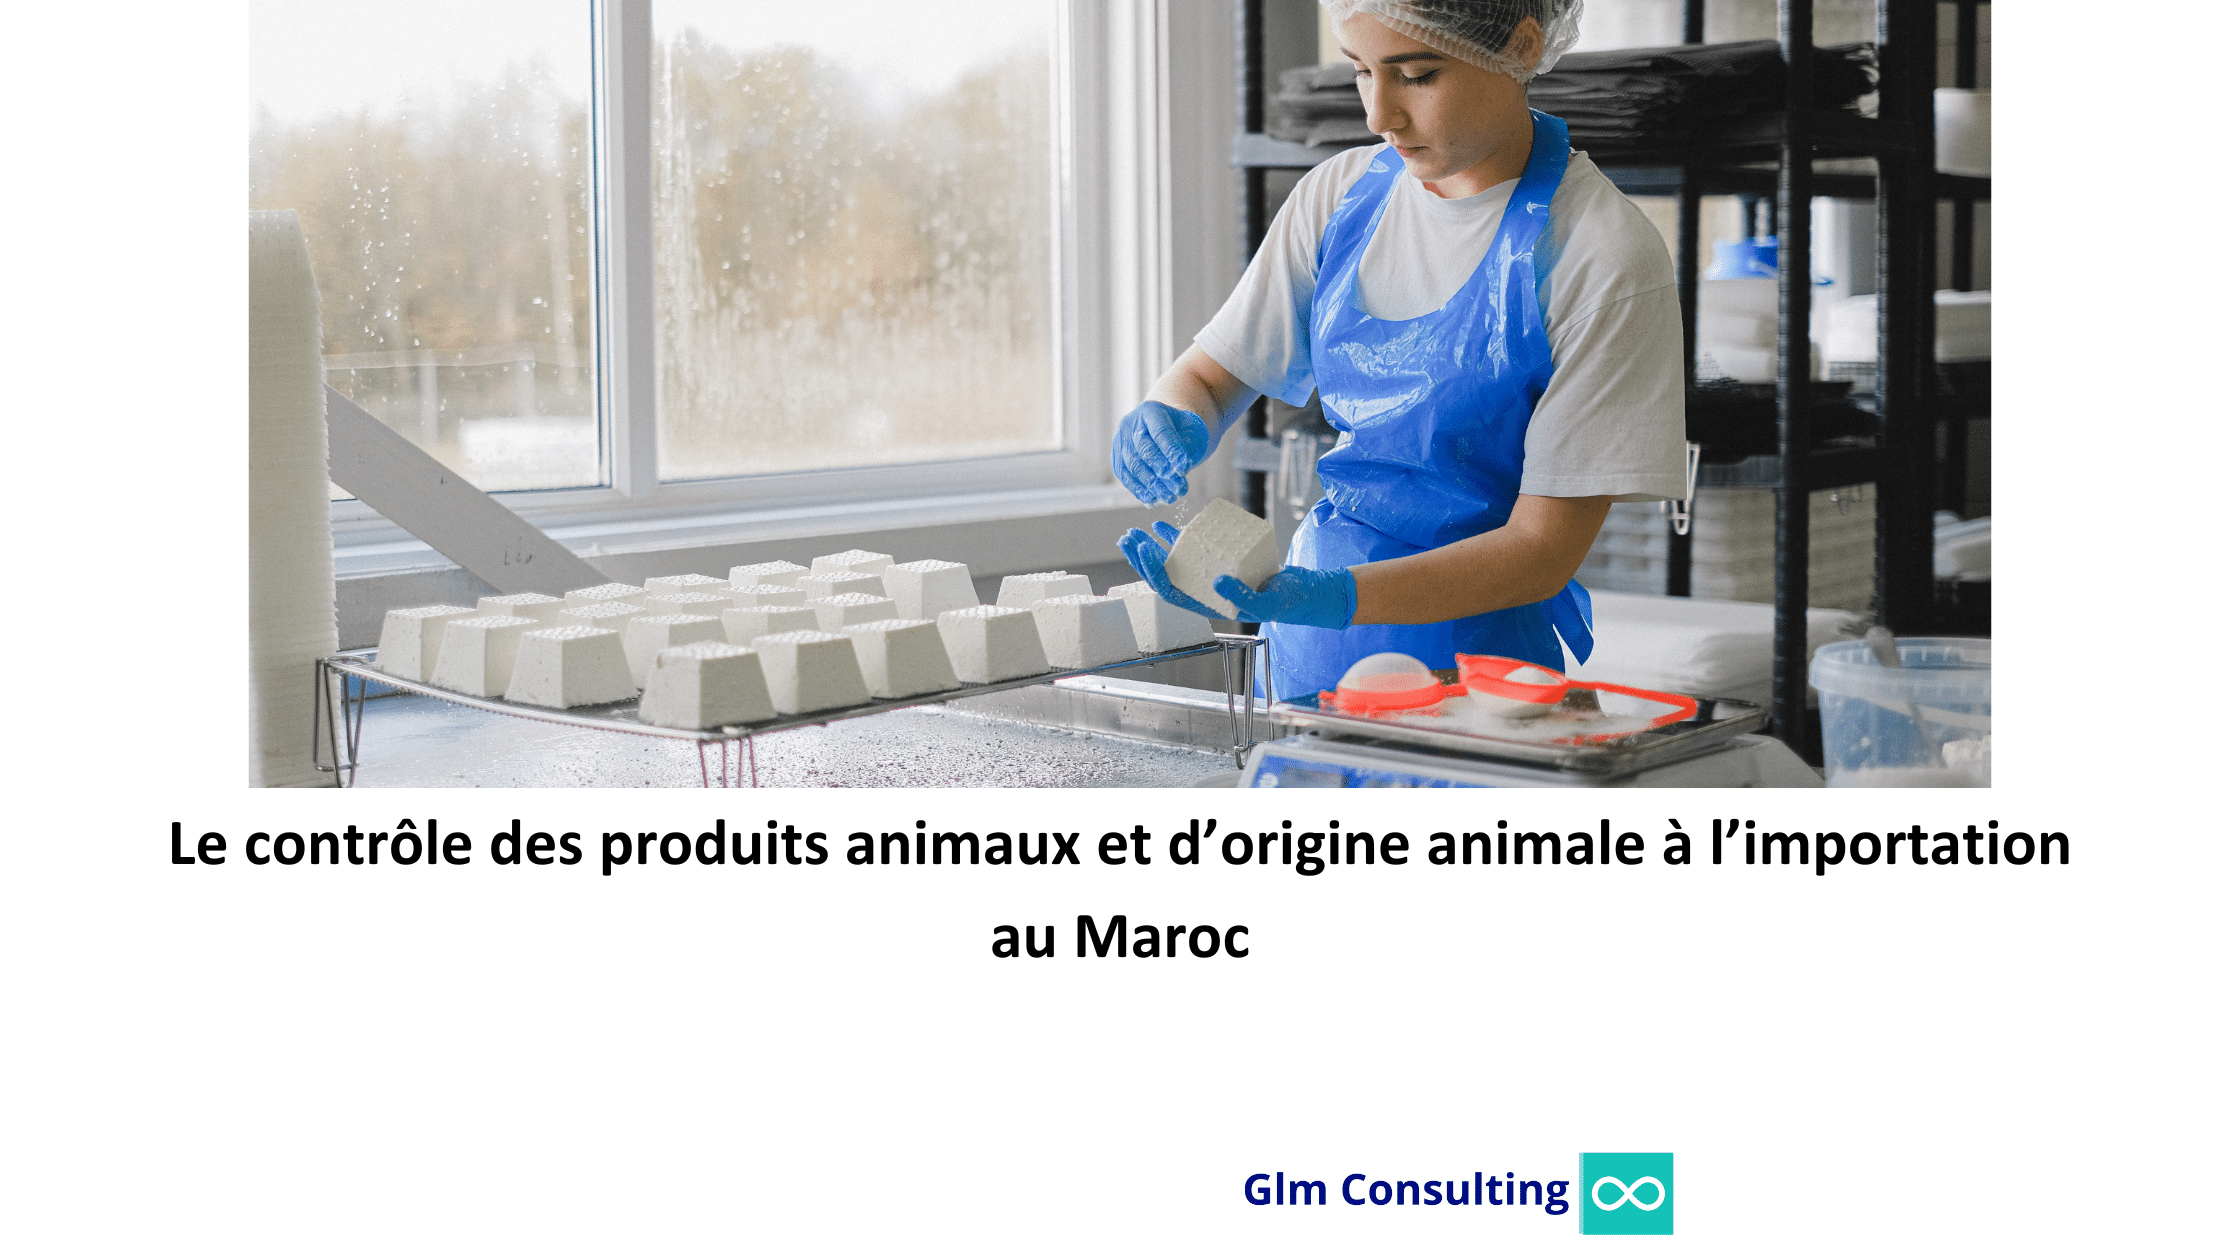 Le Contrôle des Produits Animaux et d’Origine Animale à l’Importation au Maroc